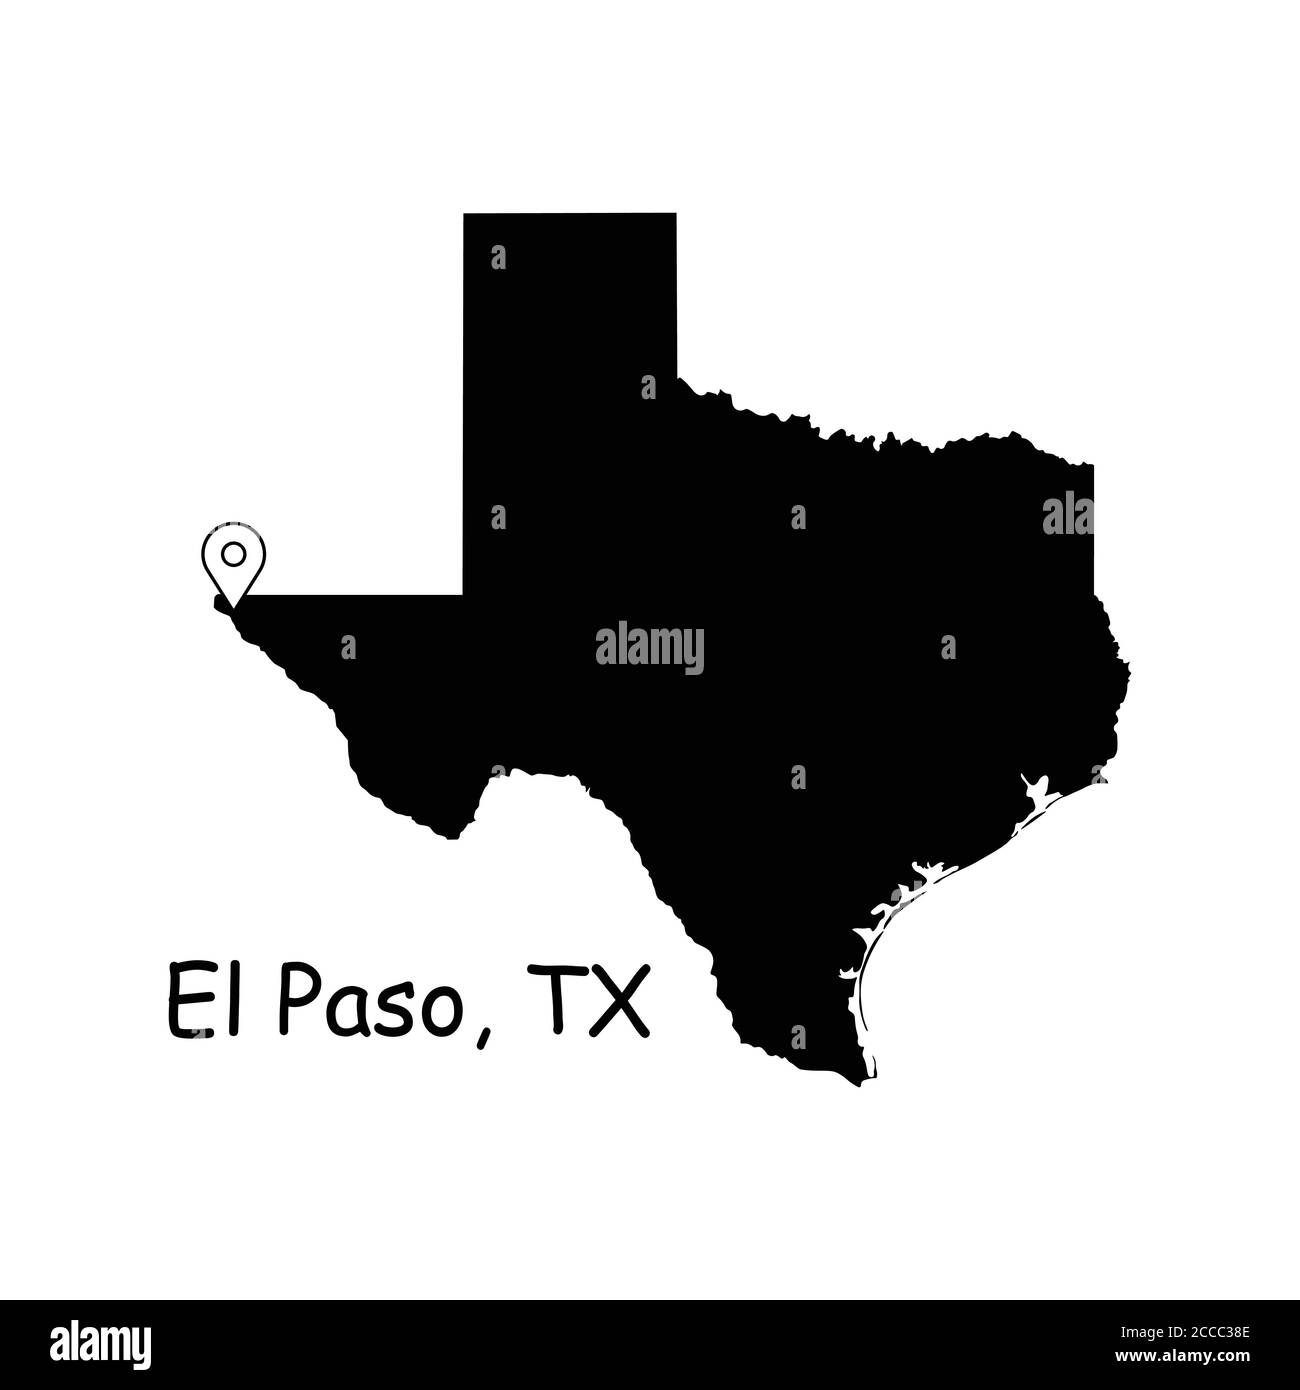 El Paso sur la carte de l'État du Texas. Carte détaillée de l'État du Texas avec broche d'emplacement sur la ville d'El Paso. Carte vectorielle de silhouette noire isolée sur fond blanc. Illustration de Vecteur